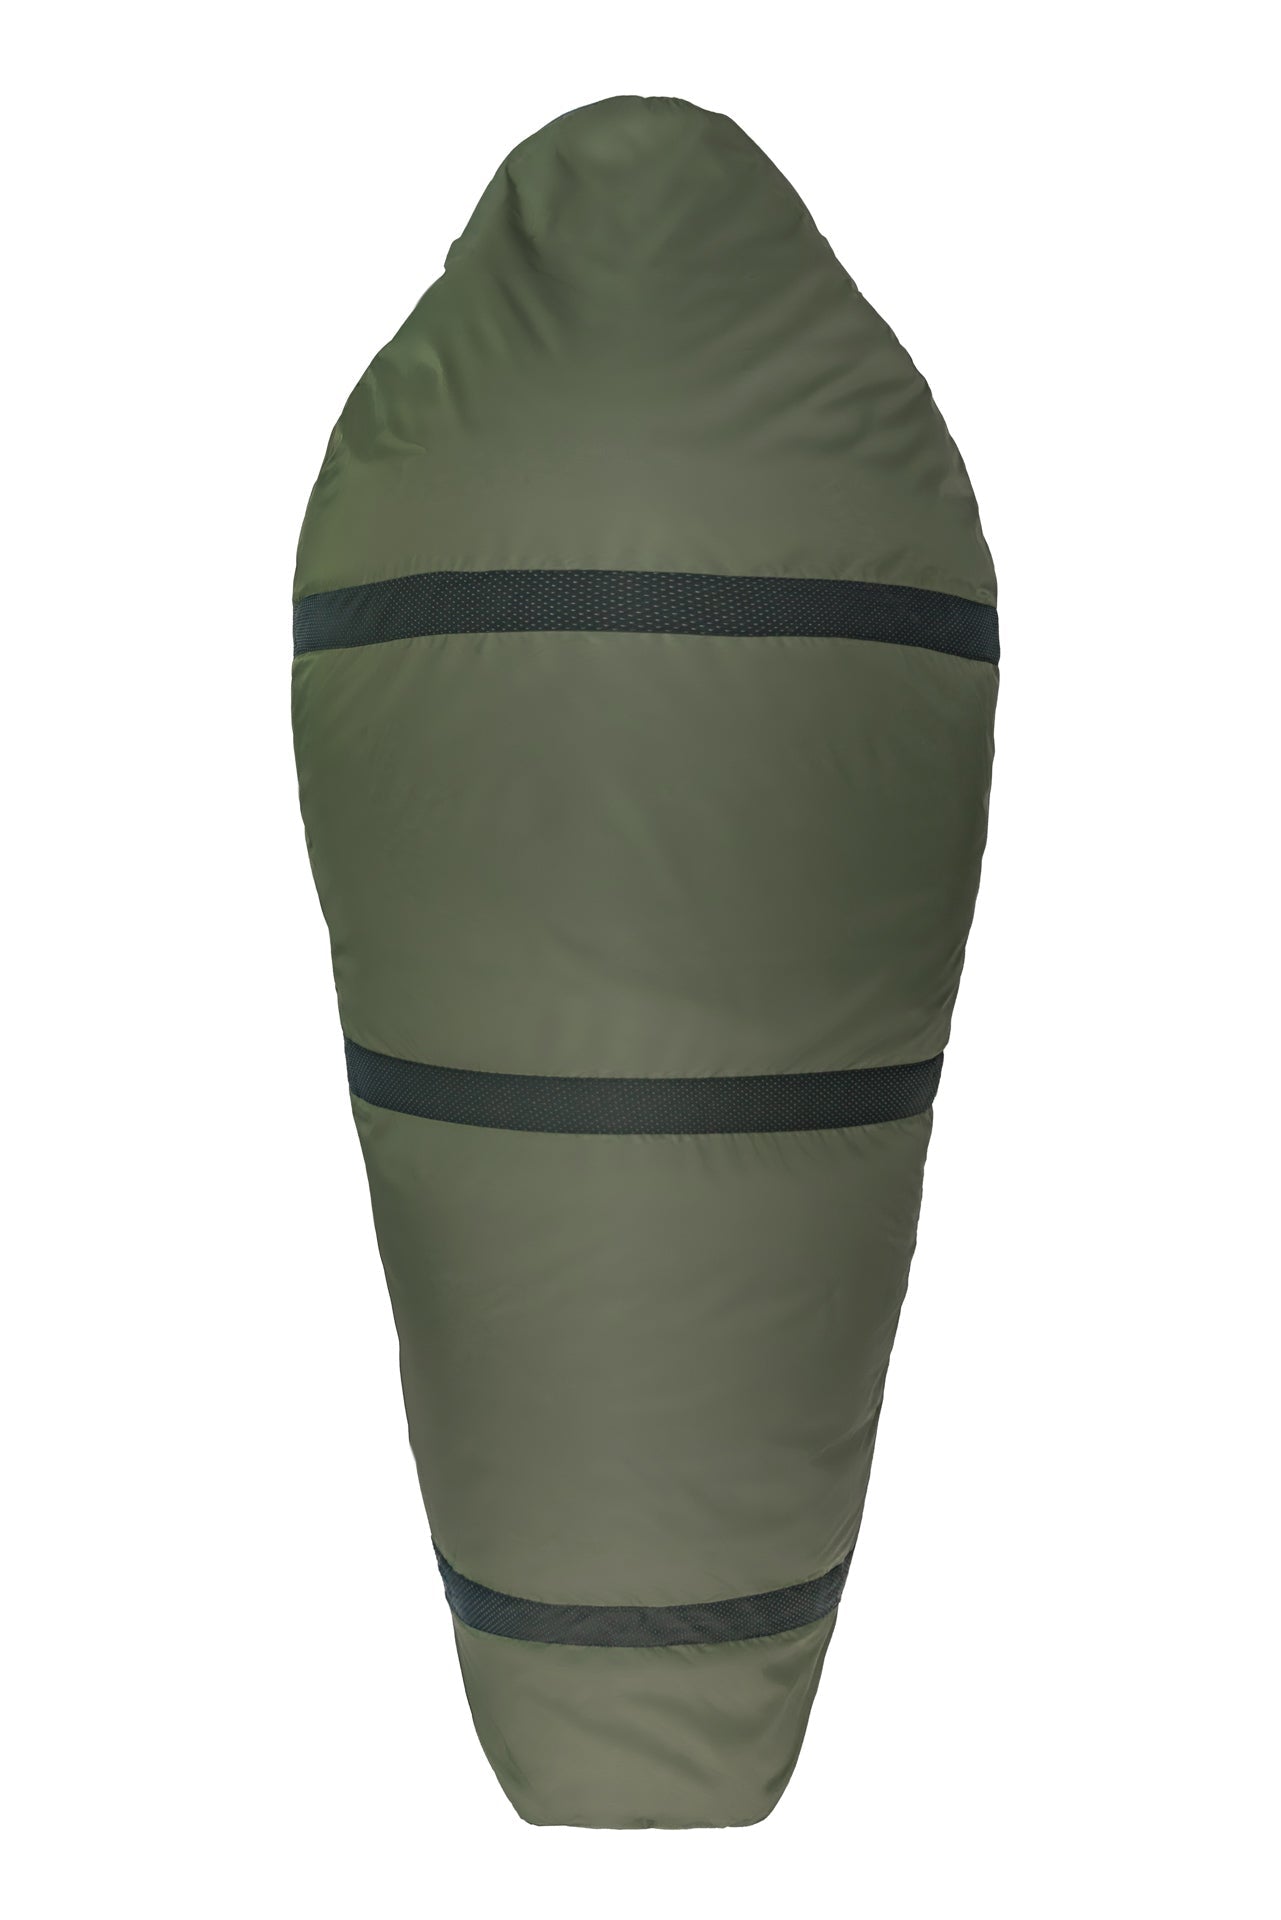 Grüezi bag Outdoorschlafsack Biopod Wolle Survival XXL Wide - Anti-Rutsch-Noppen auf der Rückseite